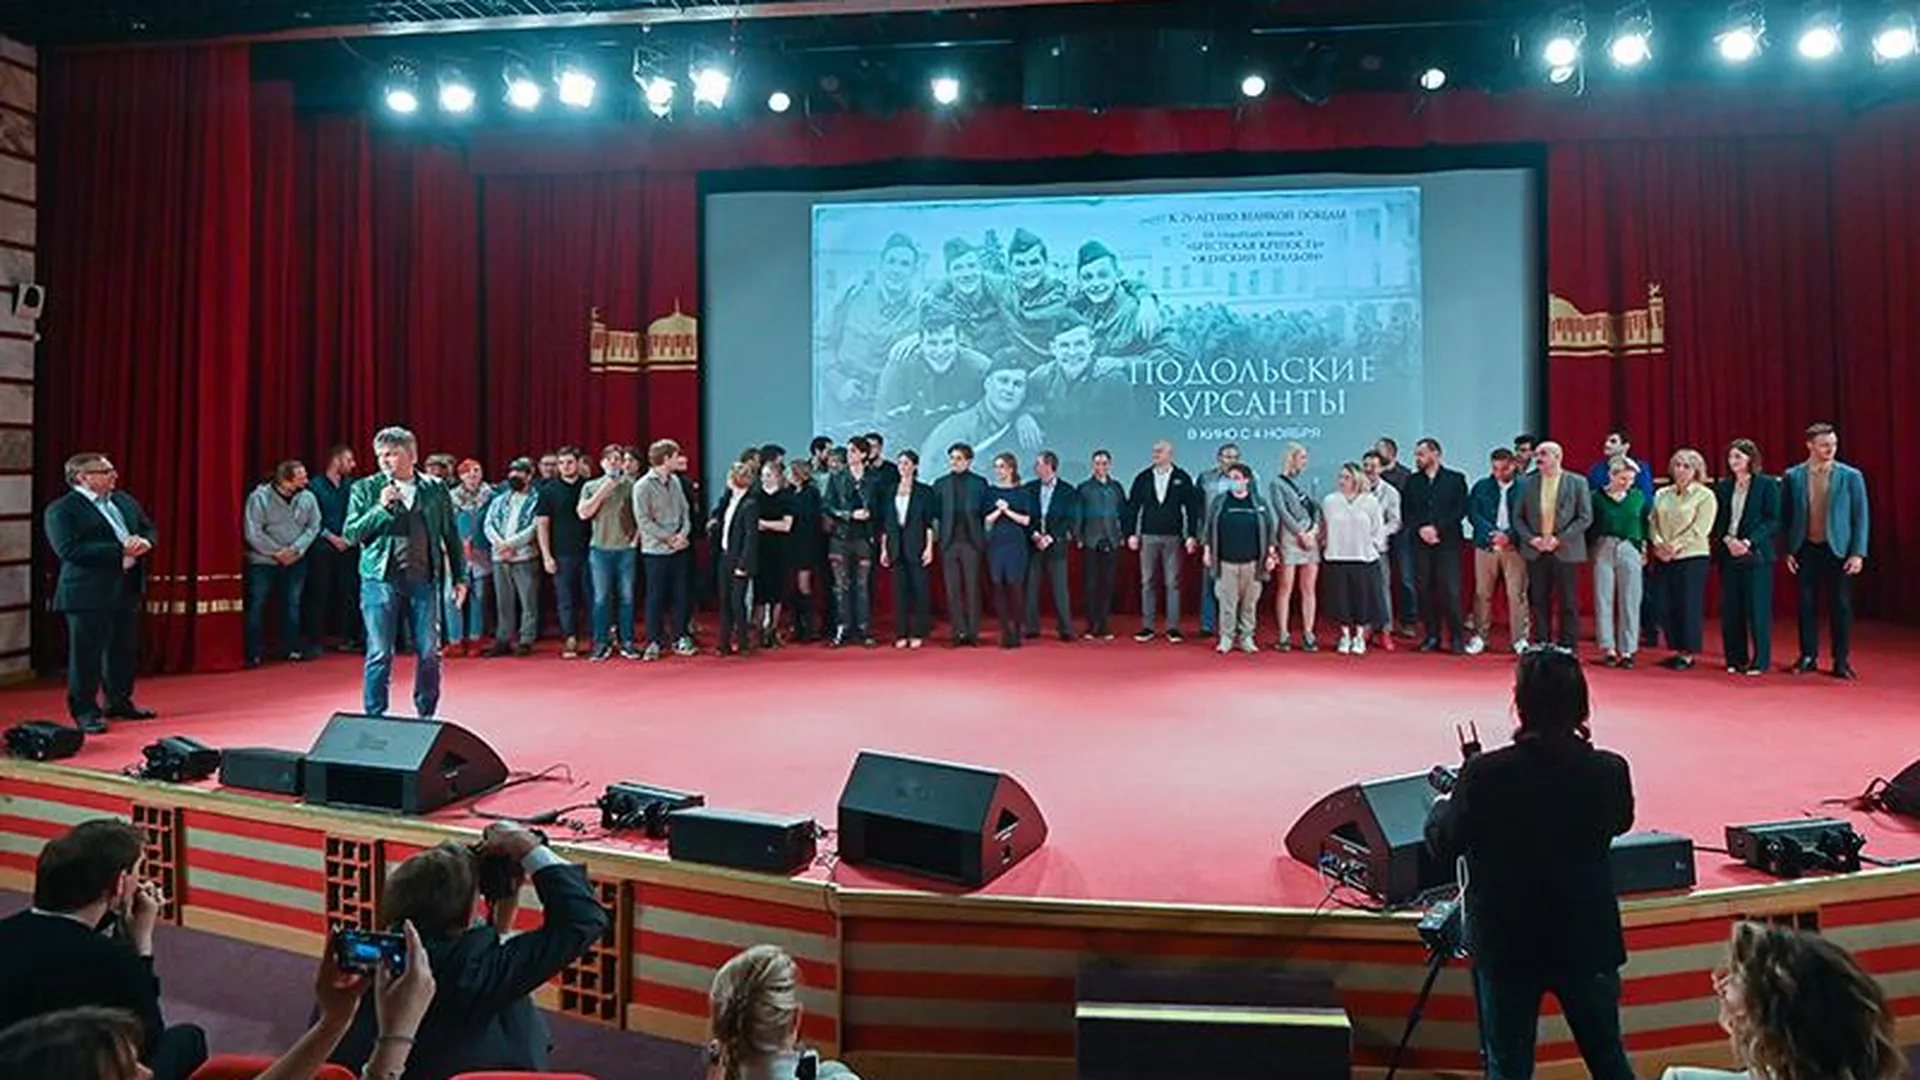 «Подольских курсантов» номинировали на международном фестивале в Румынии